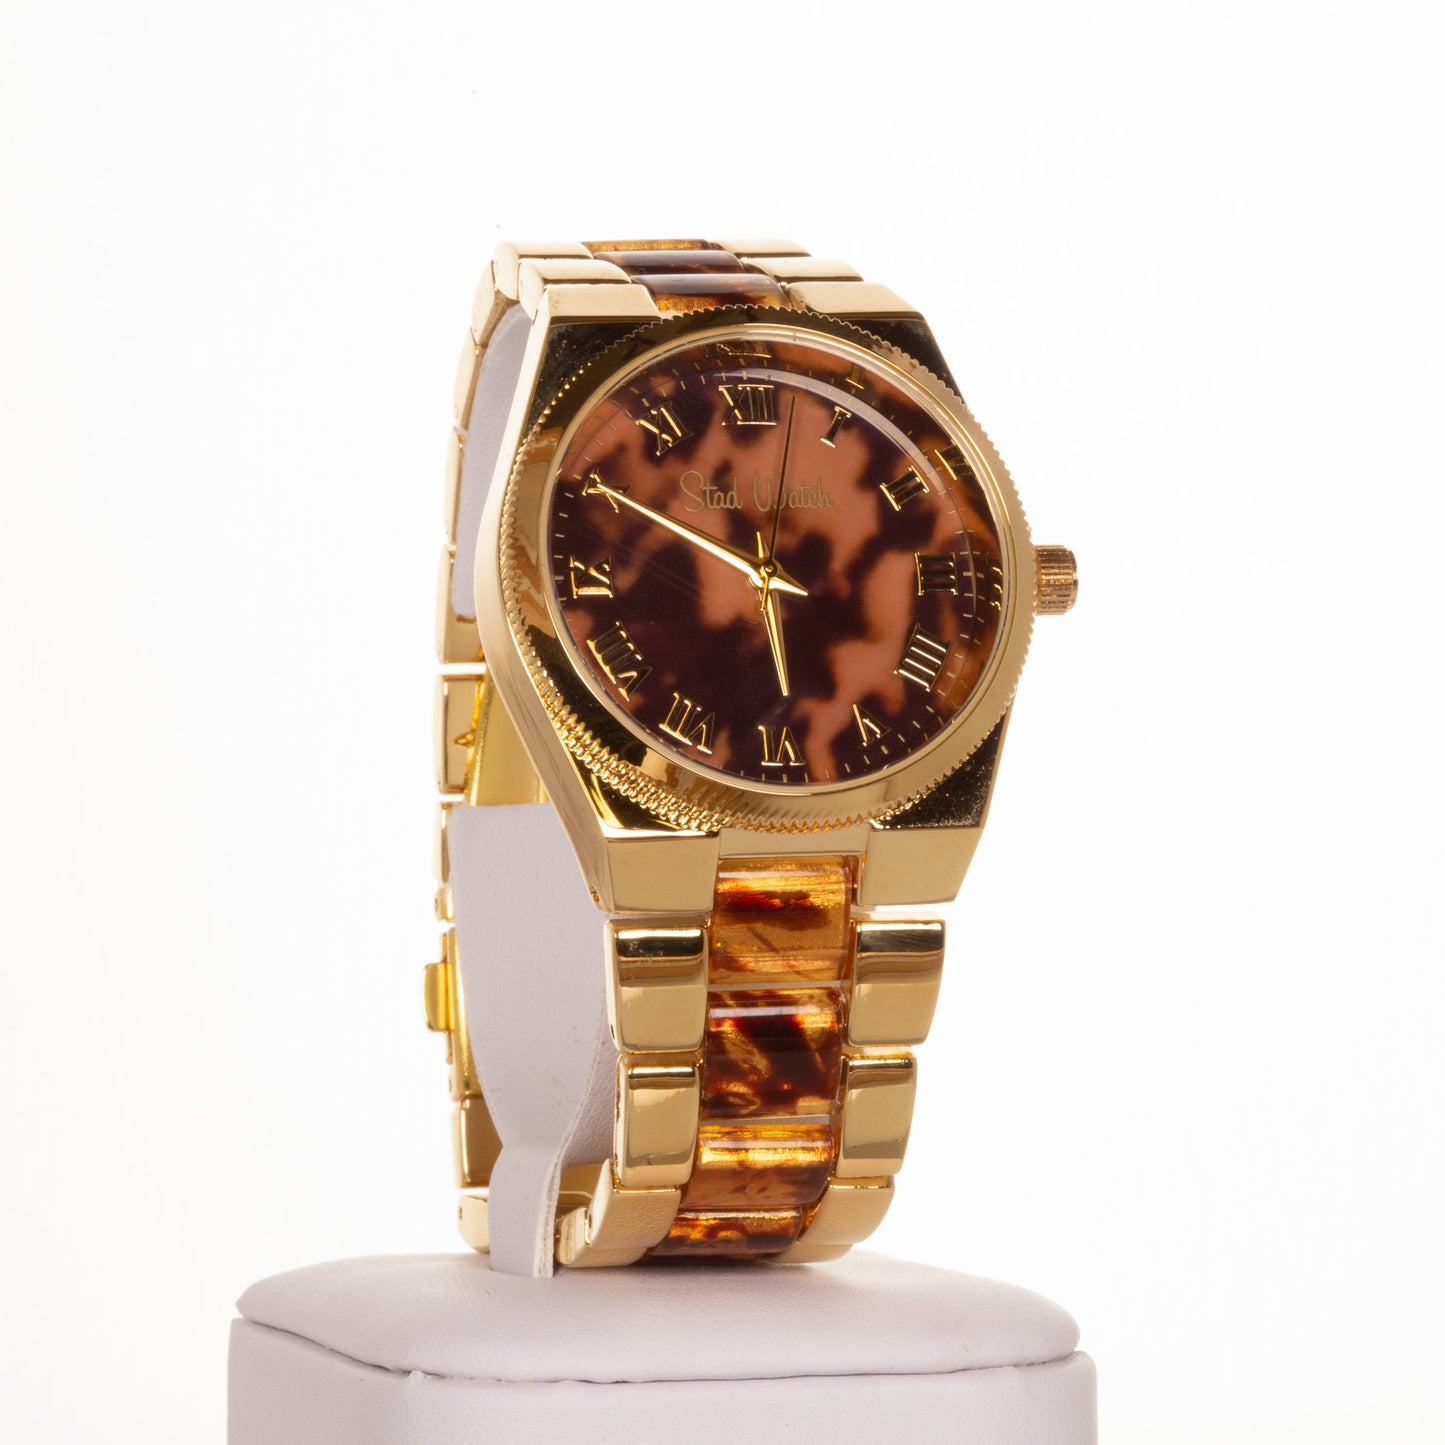 Dámské hodinky zlaté barvy s tygřími proužky a ciferníkem s římskými číslicemi